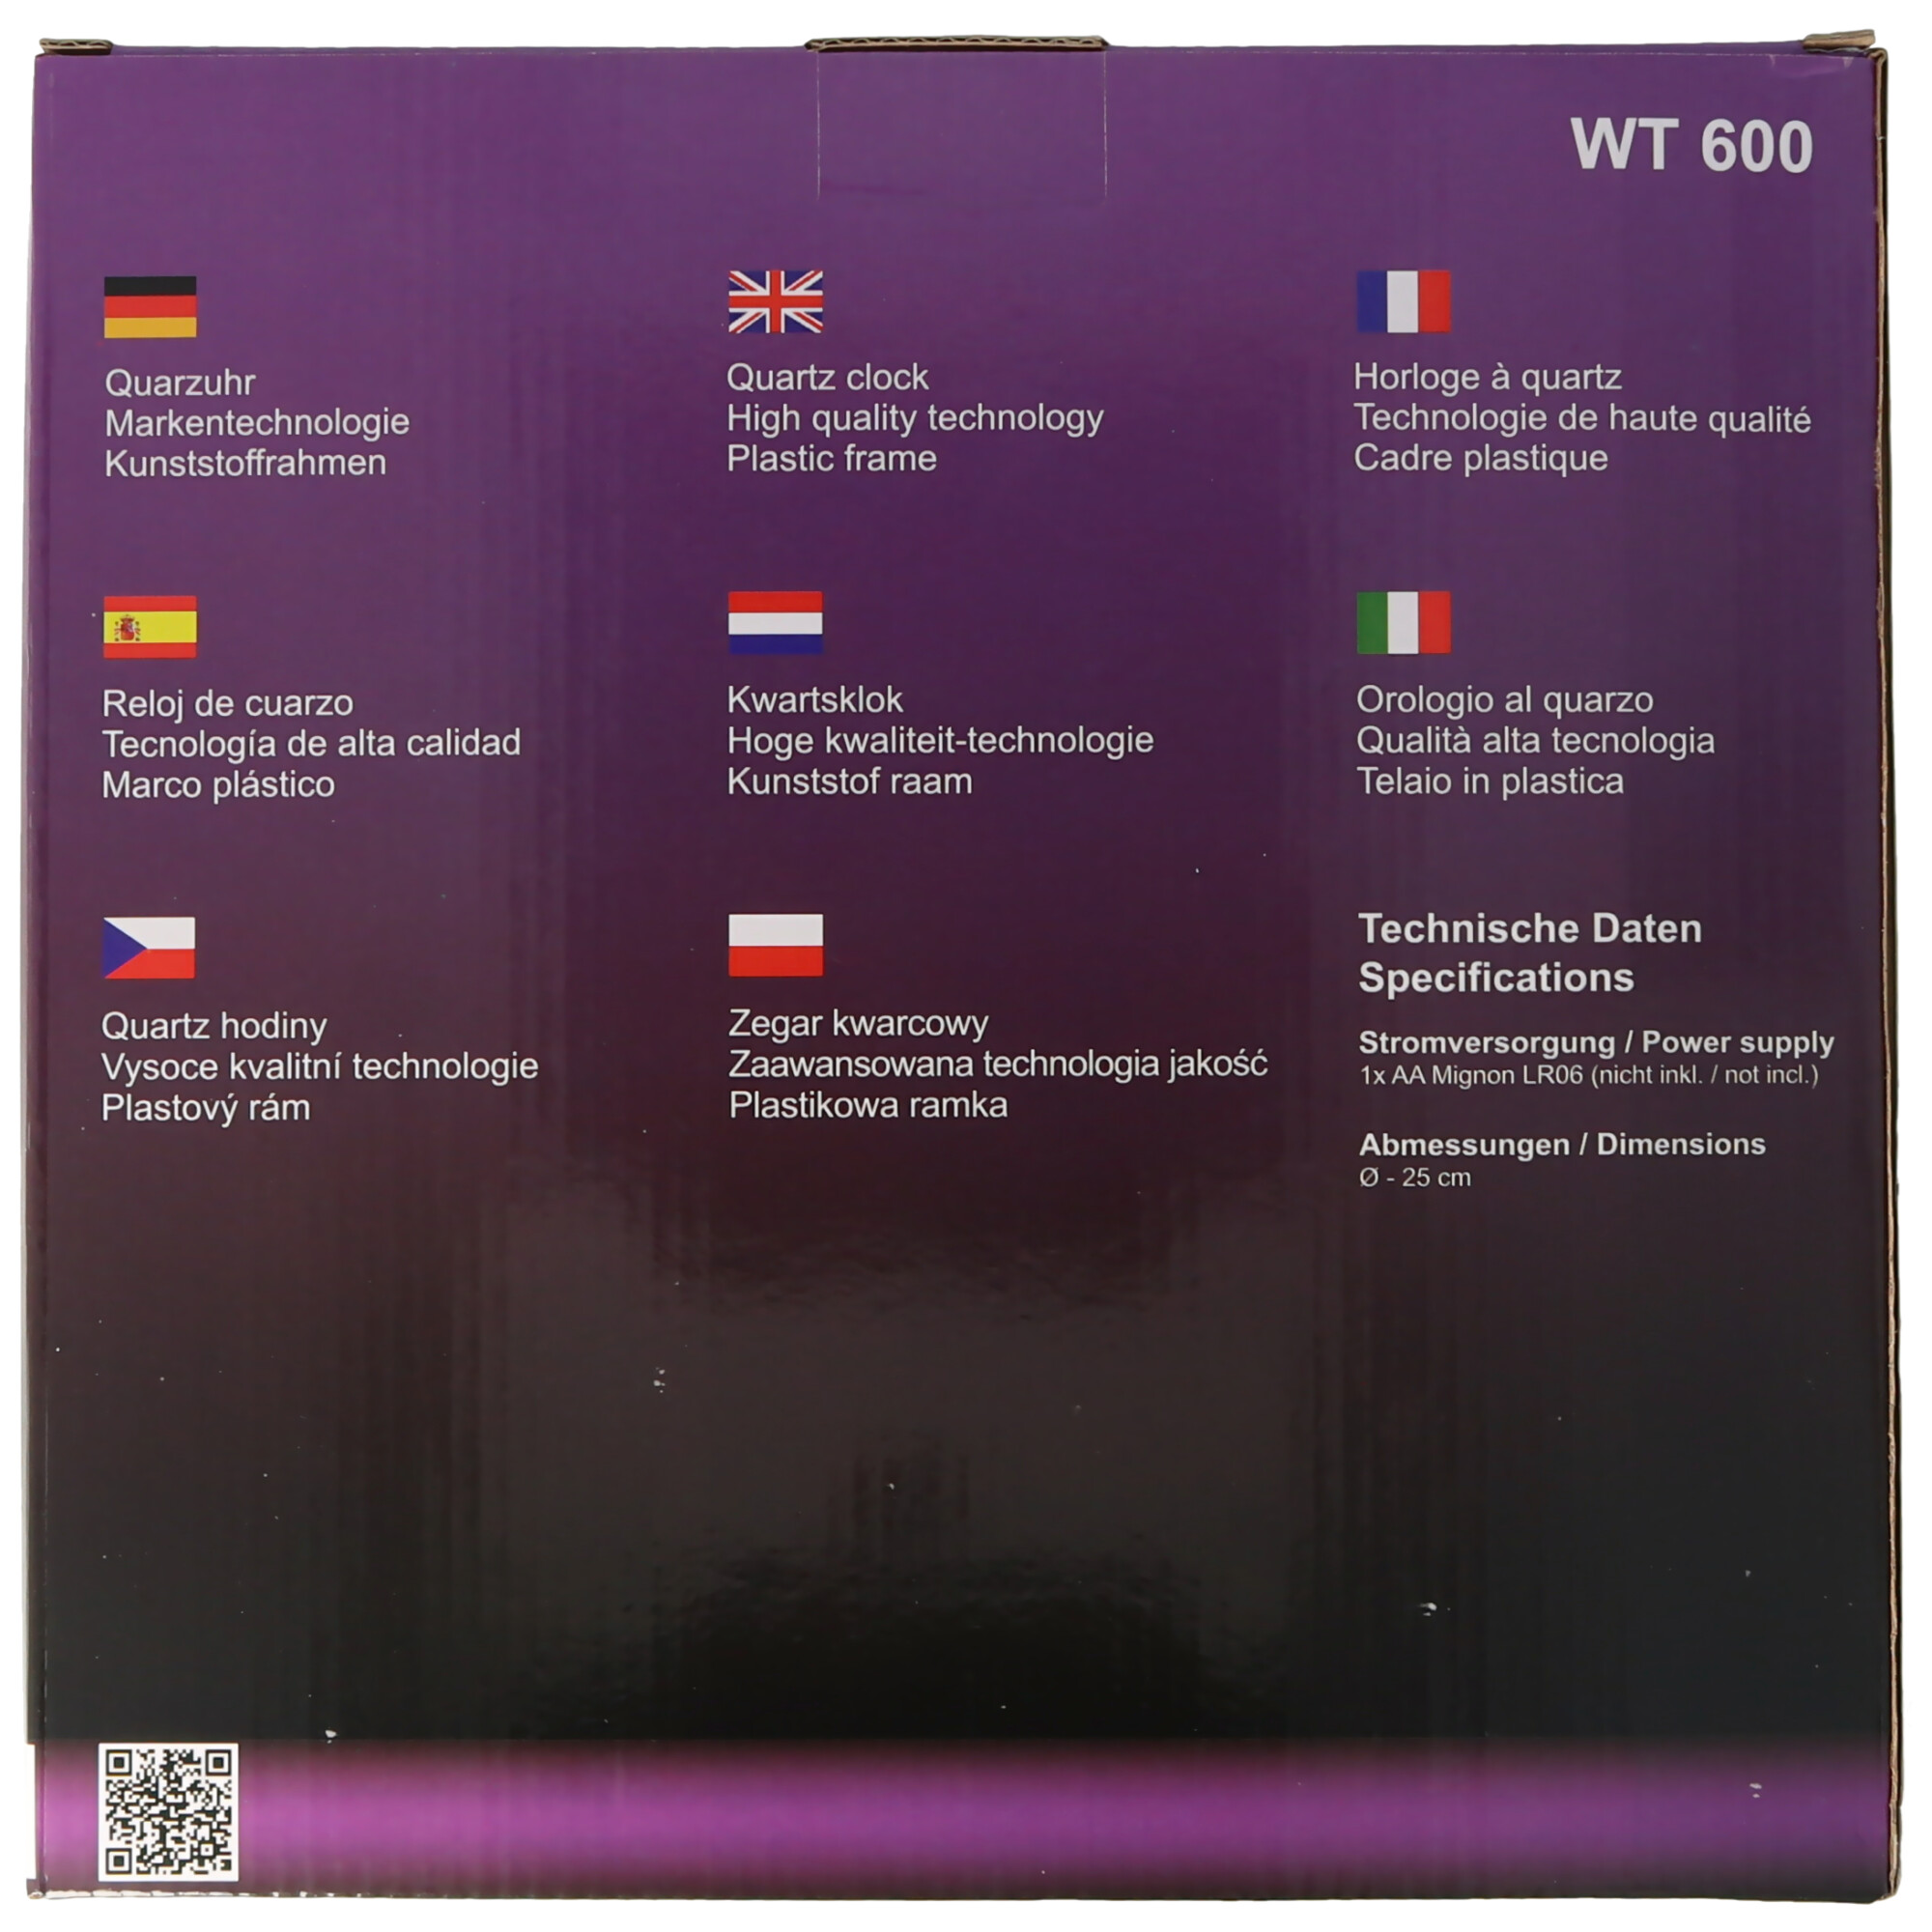 WT 600 - klassische, analoge Wanduhr mit Kuststoffrahmen in rot von Technoline